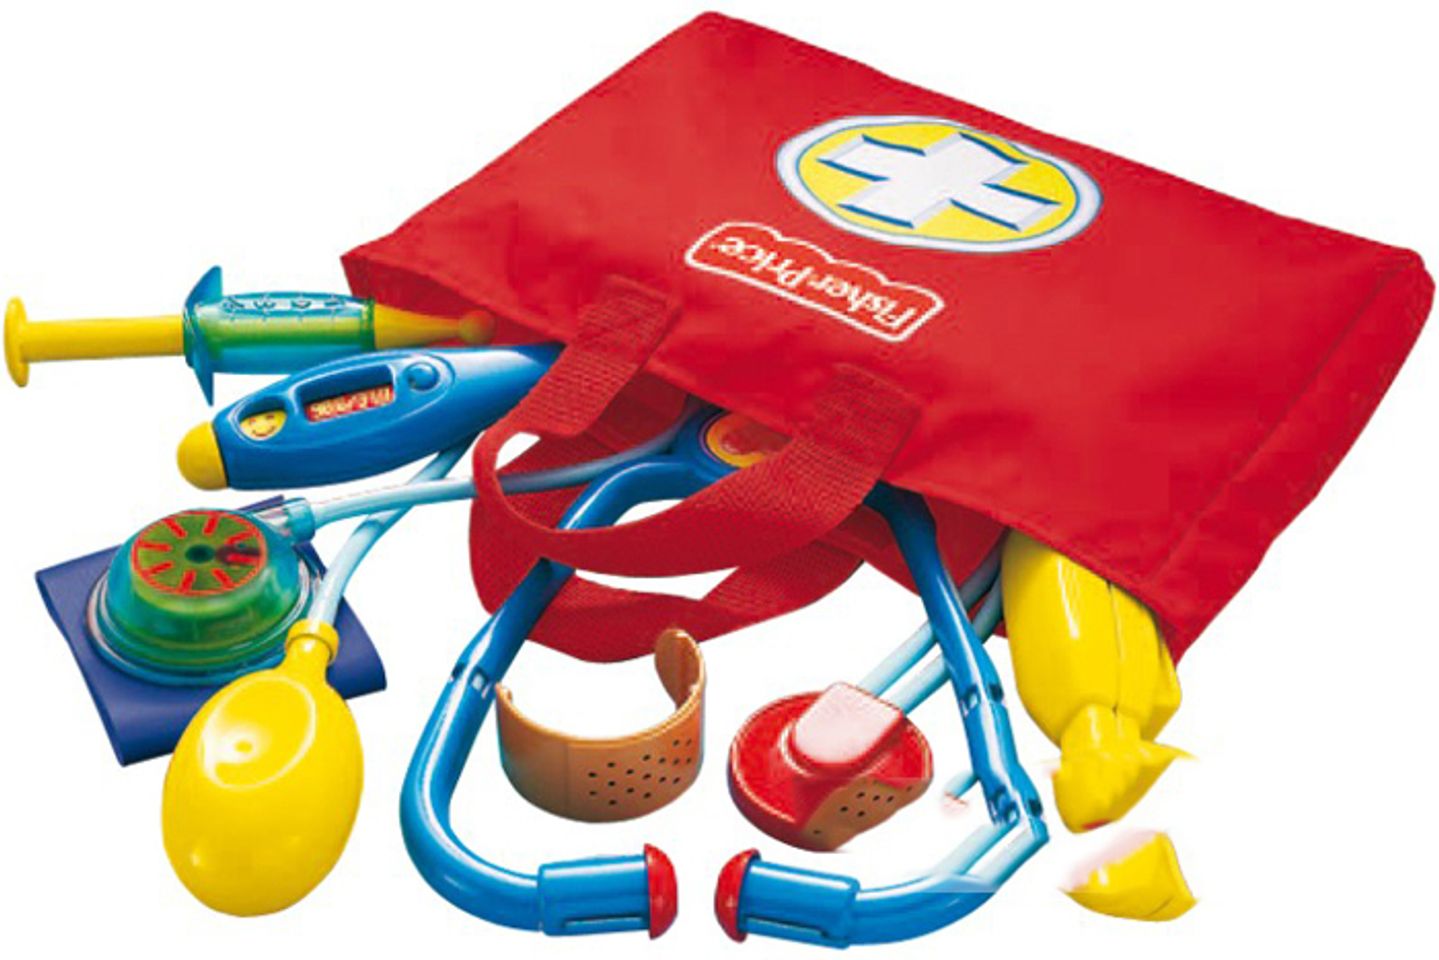 Bộ đồ chơi bác sĩ thích hợp với cả bé trai và bé gái, giúp bé có những hiểu biết cơ bản về công việc bác sĩ thú vị.